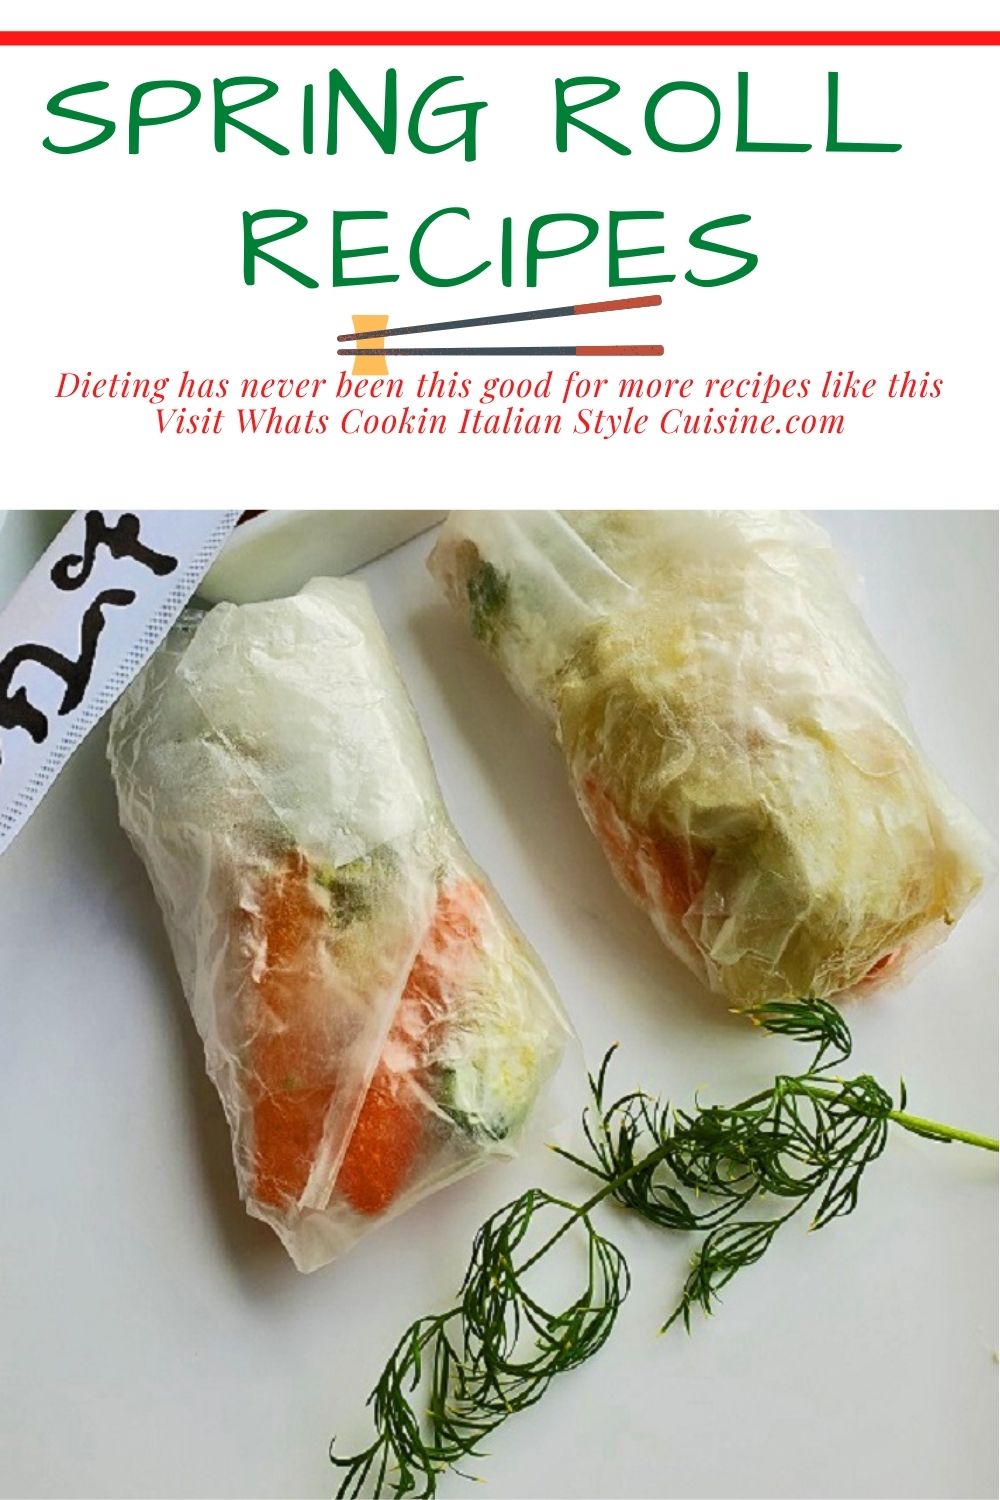 Spring Rolls Dinner - The FoodOlic recipes